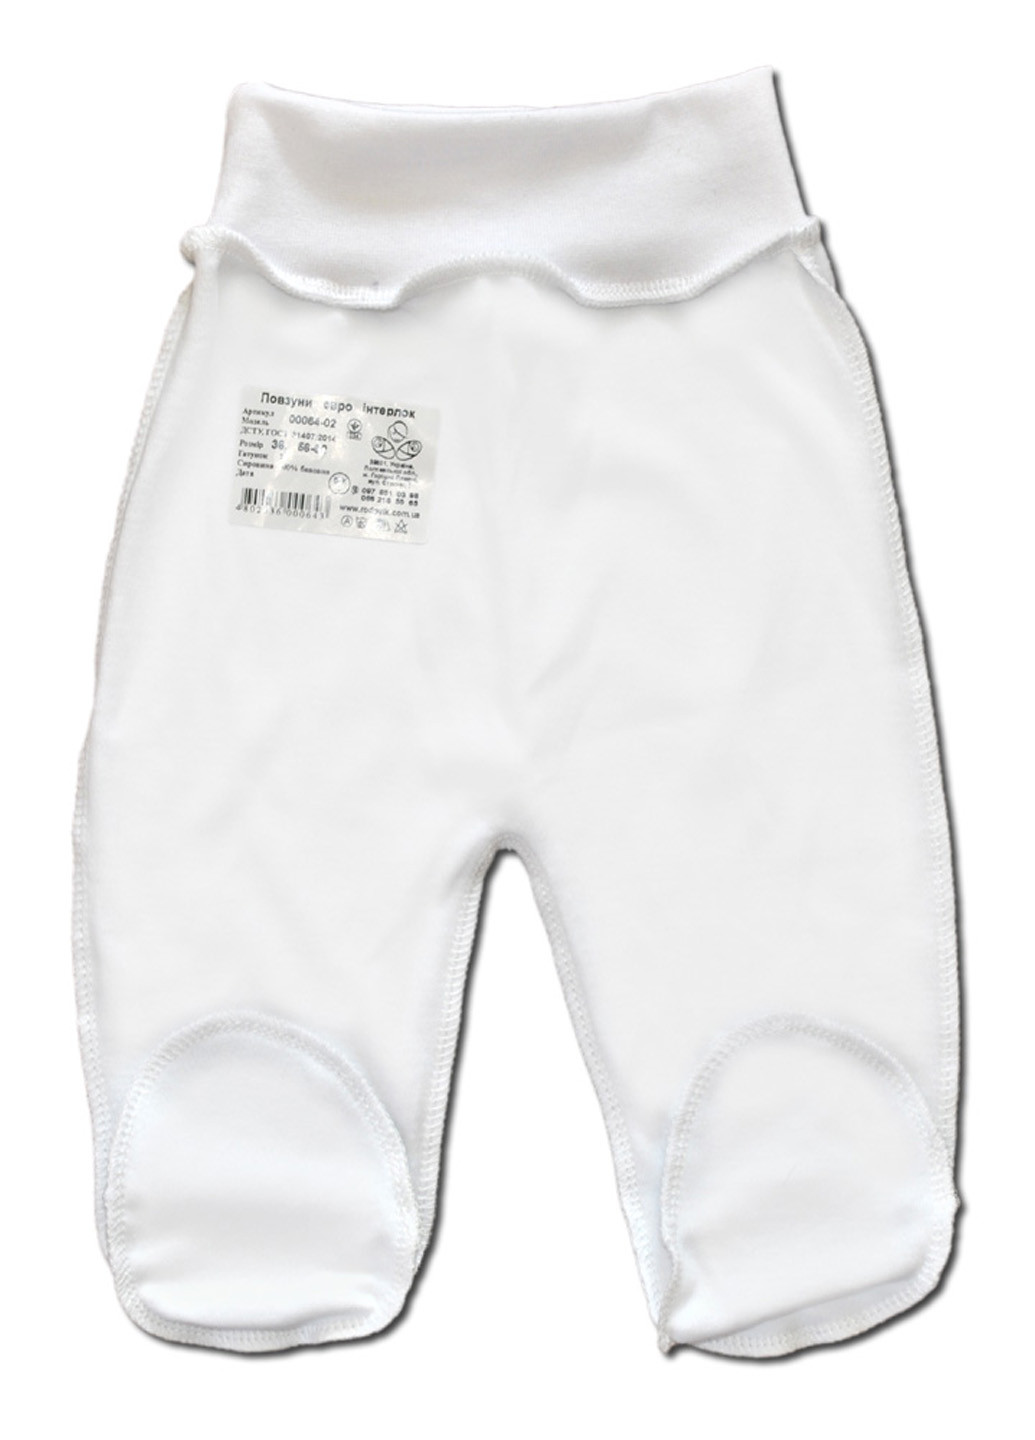 Білий демісезонний комплект одягу для малюків №8 (7 предметів) тм колекція капітошка білий Родовик комплект 08БХ